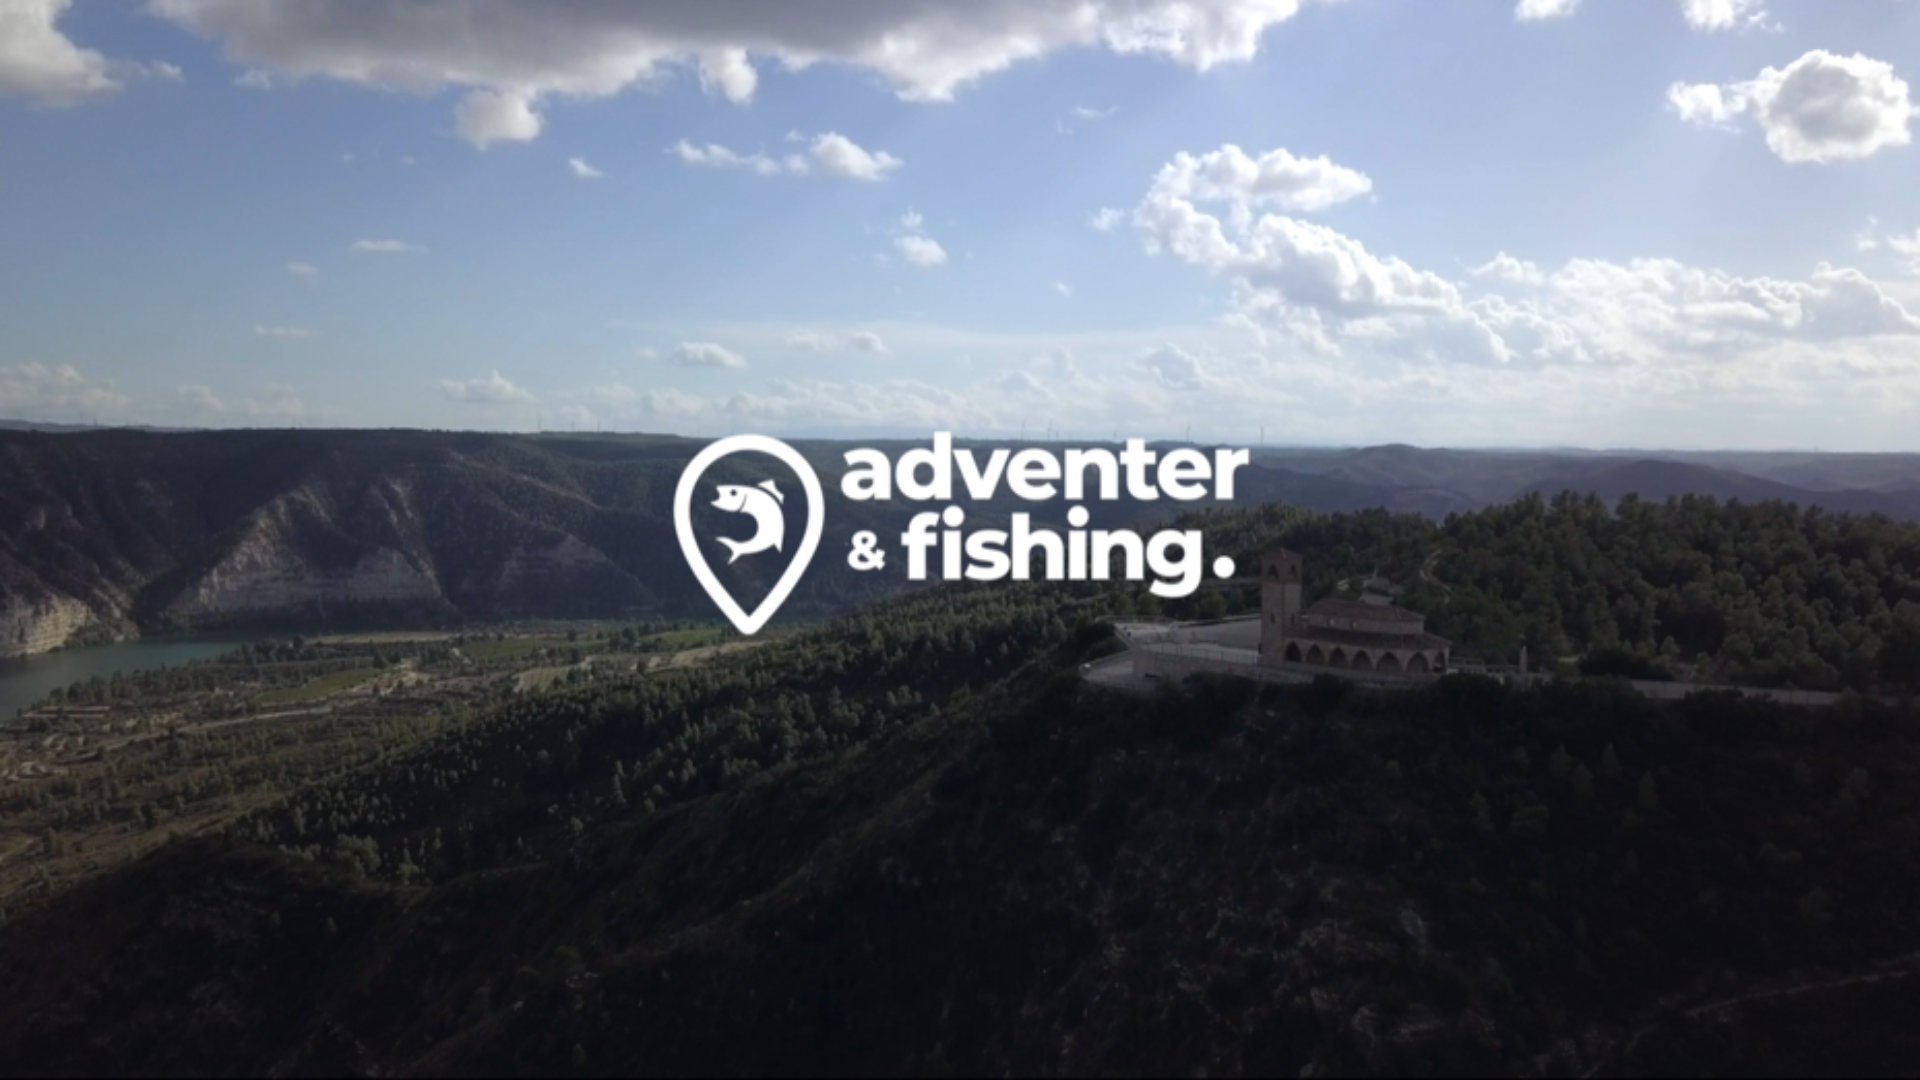 Adventer & fishing - TV sponsorship advertising spot